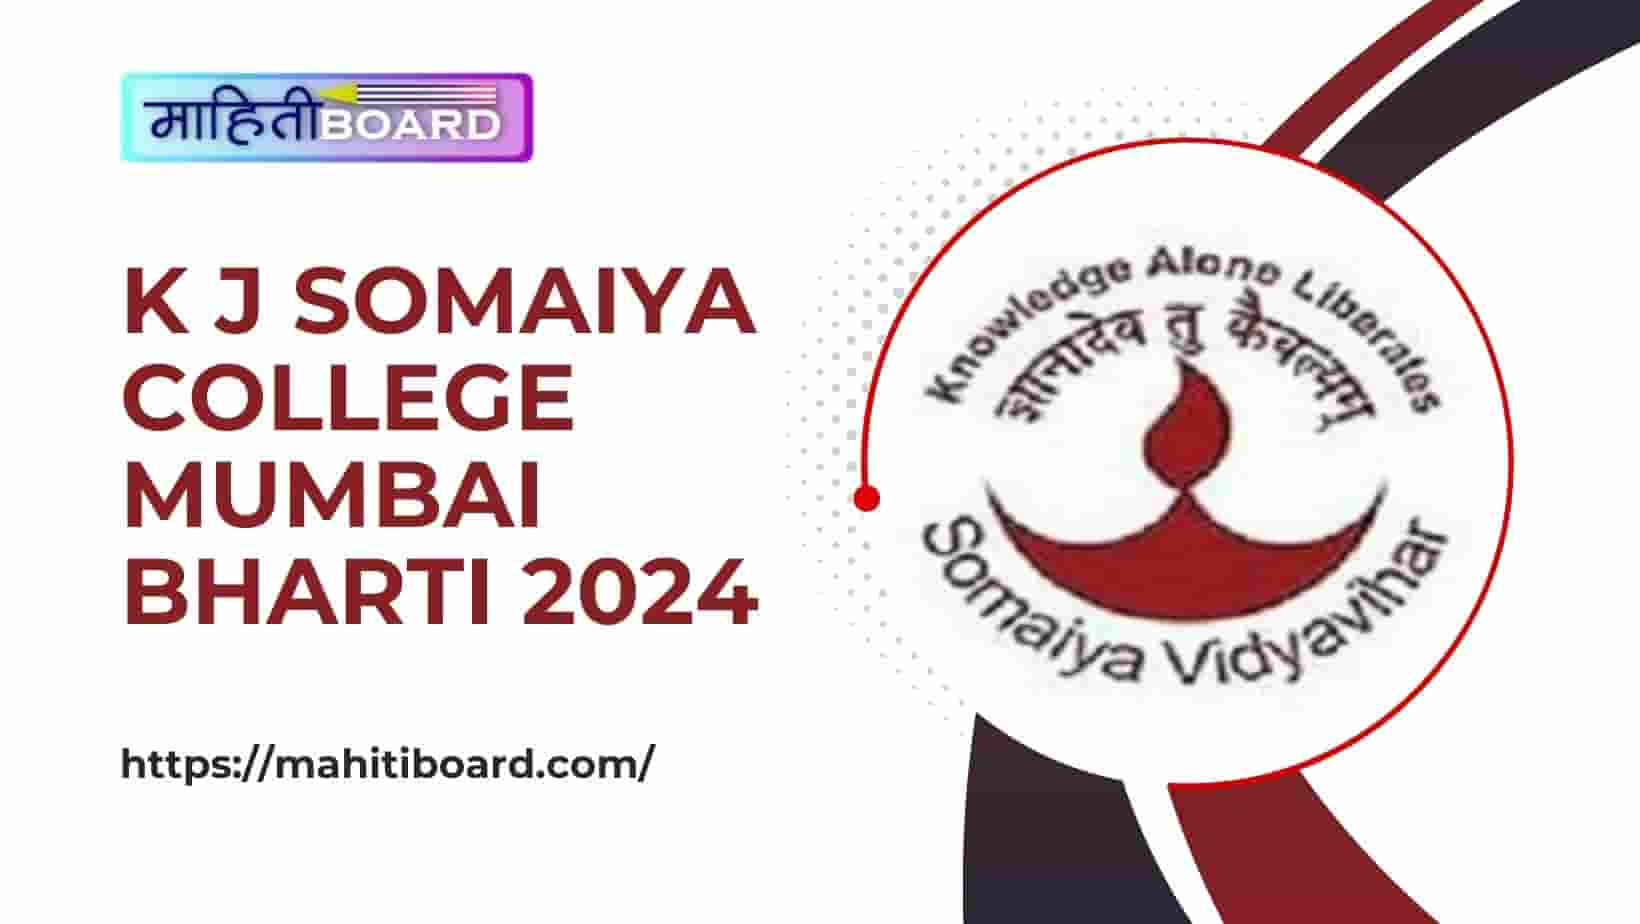 K J Somaiya College Mumbai Bharti 2024